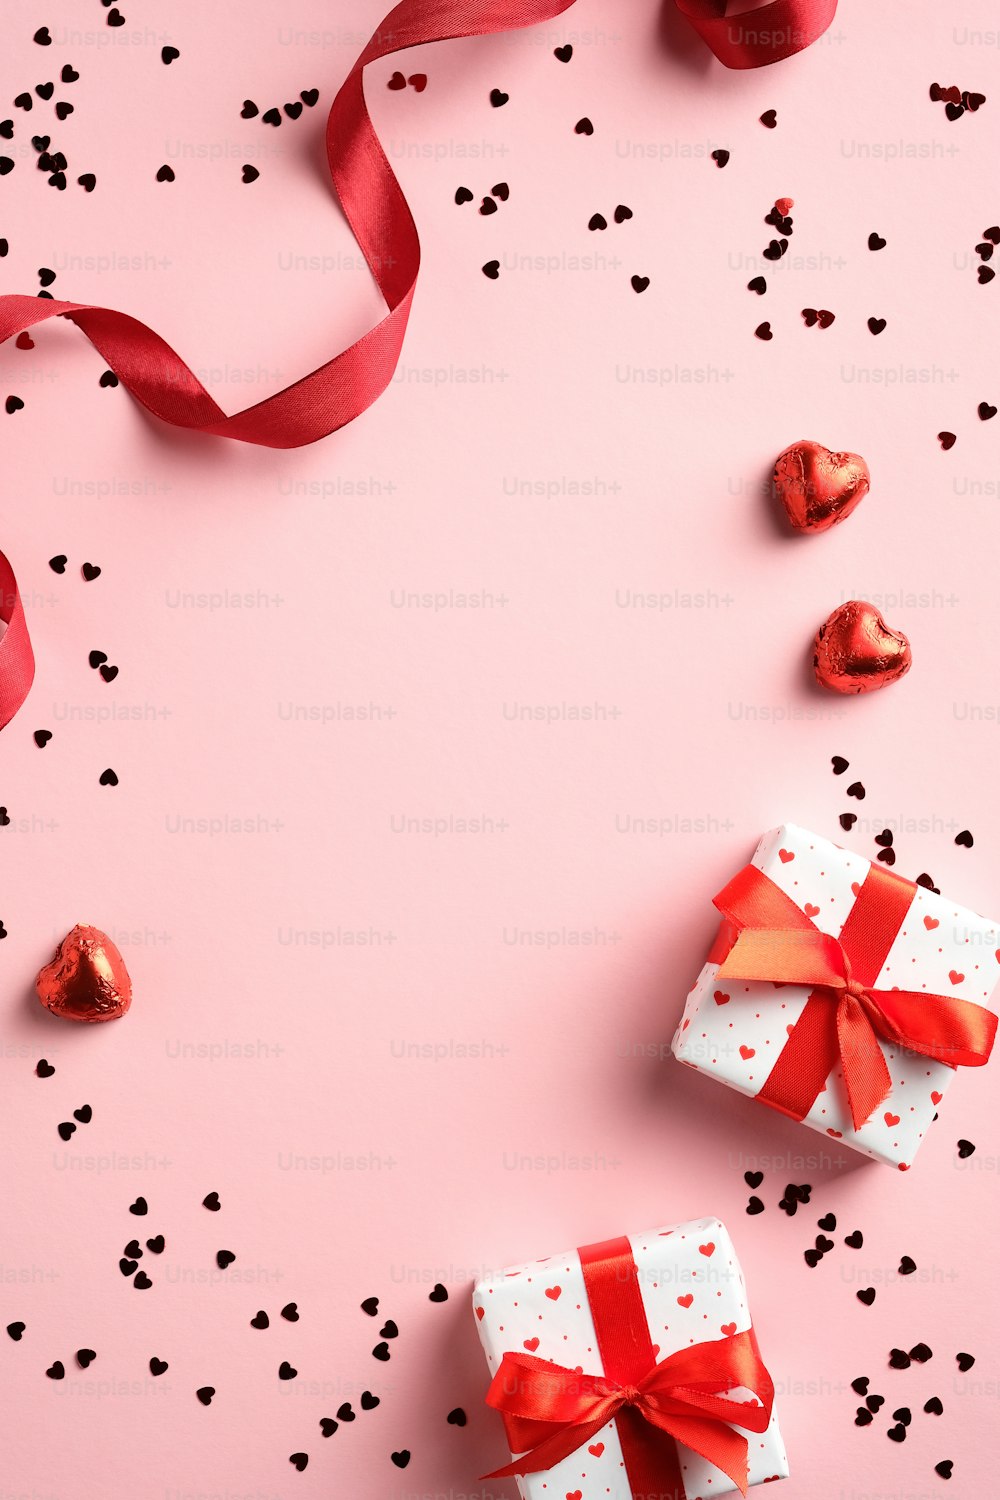 ハッピーバレンタインデーのコンセプト。ギフトボックス、赤いリボン、ピンクのテーブルの上の紙吹雪と垂直バナー。上面図、フラットレイ。バレンタインデーのギフト券のデザイン、グリーティングカード、ソーシャルメディアのストーリーデザイン